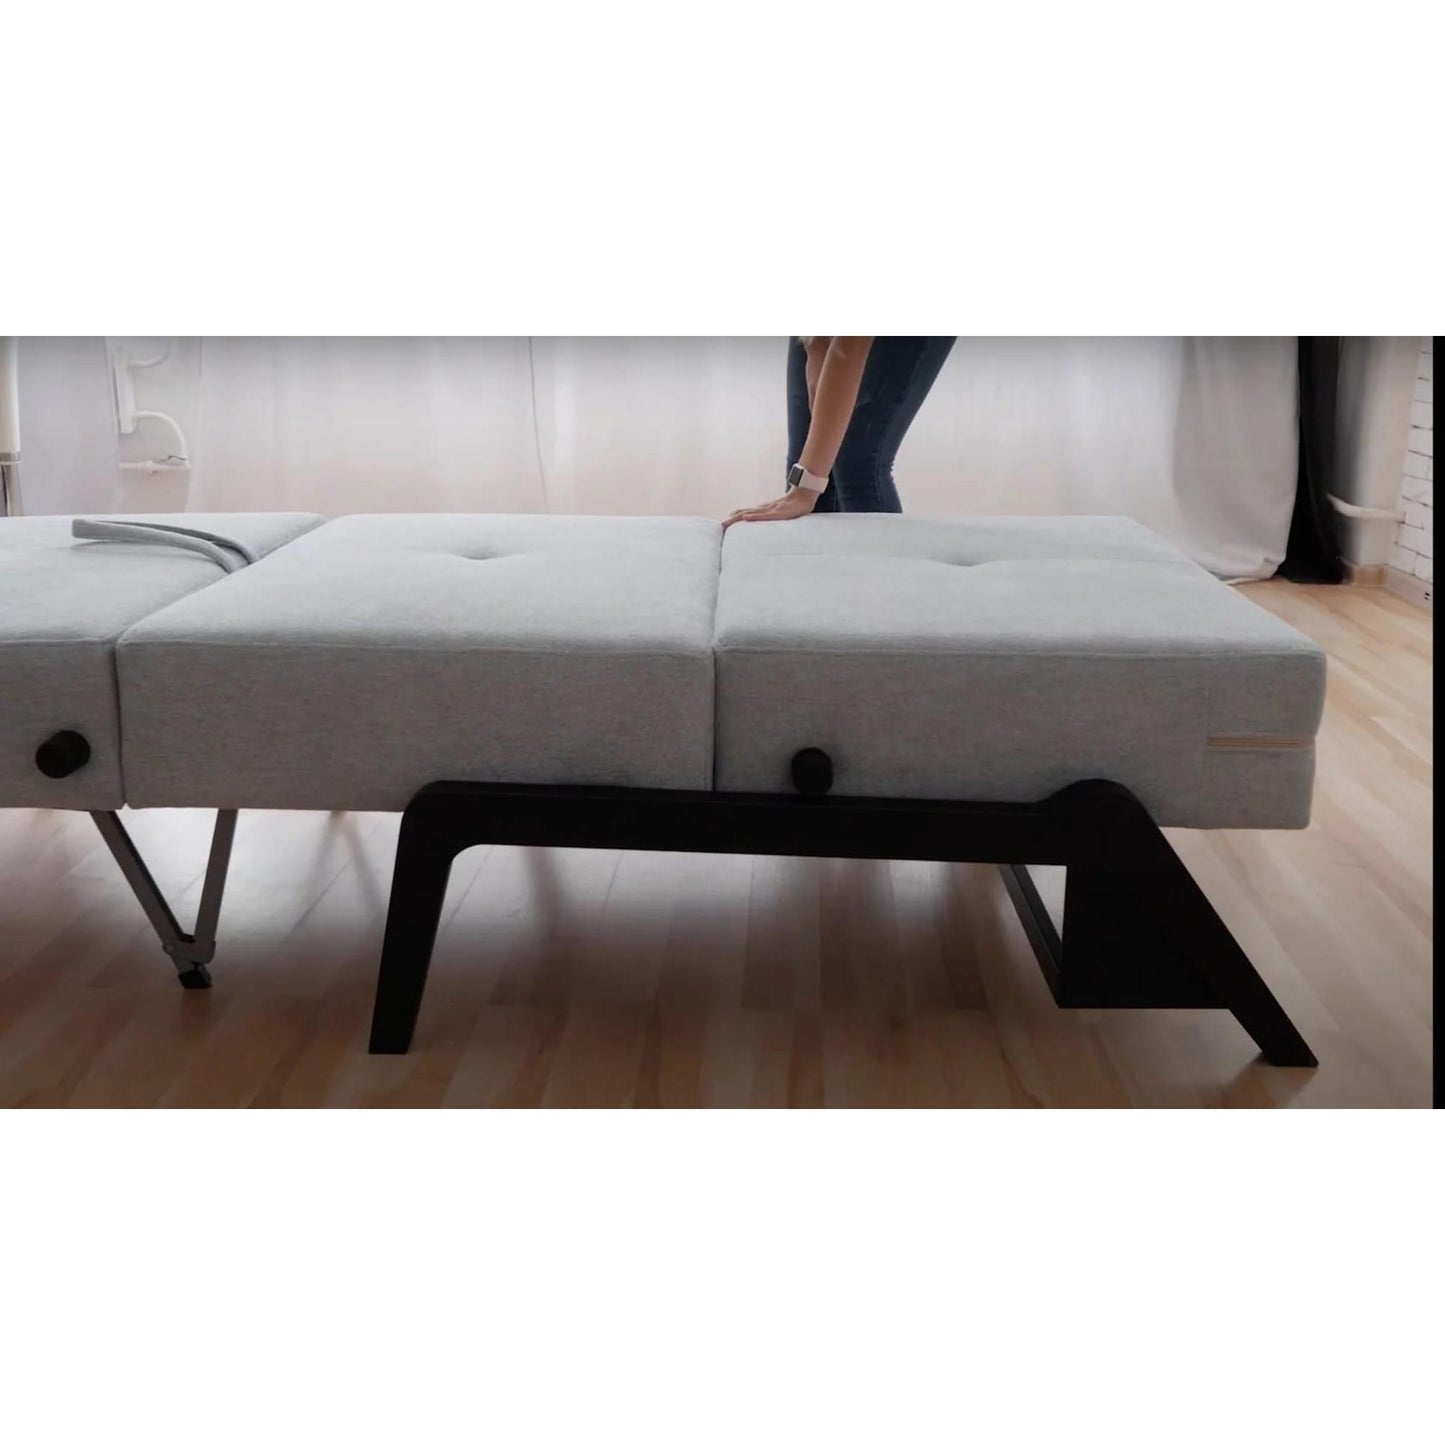 Flip Sofa Bed Medium in Light Teal